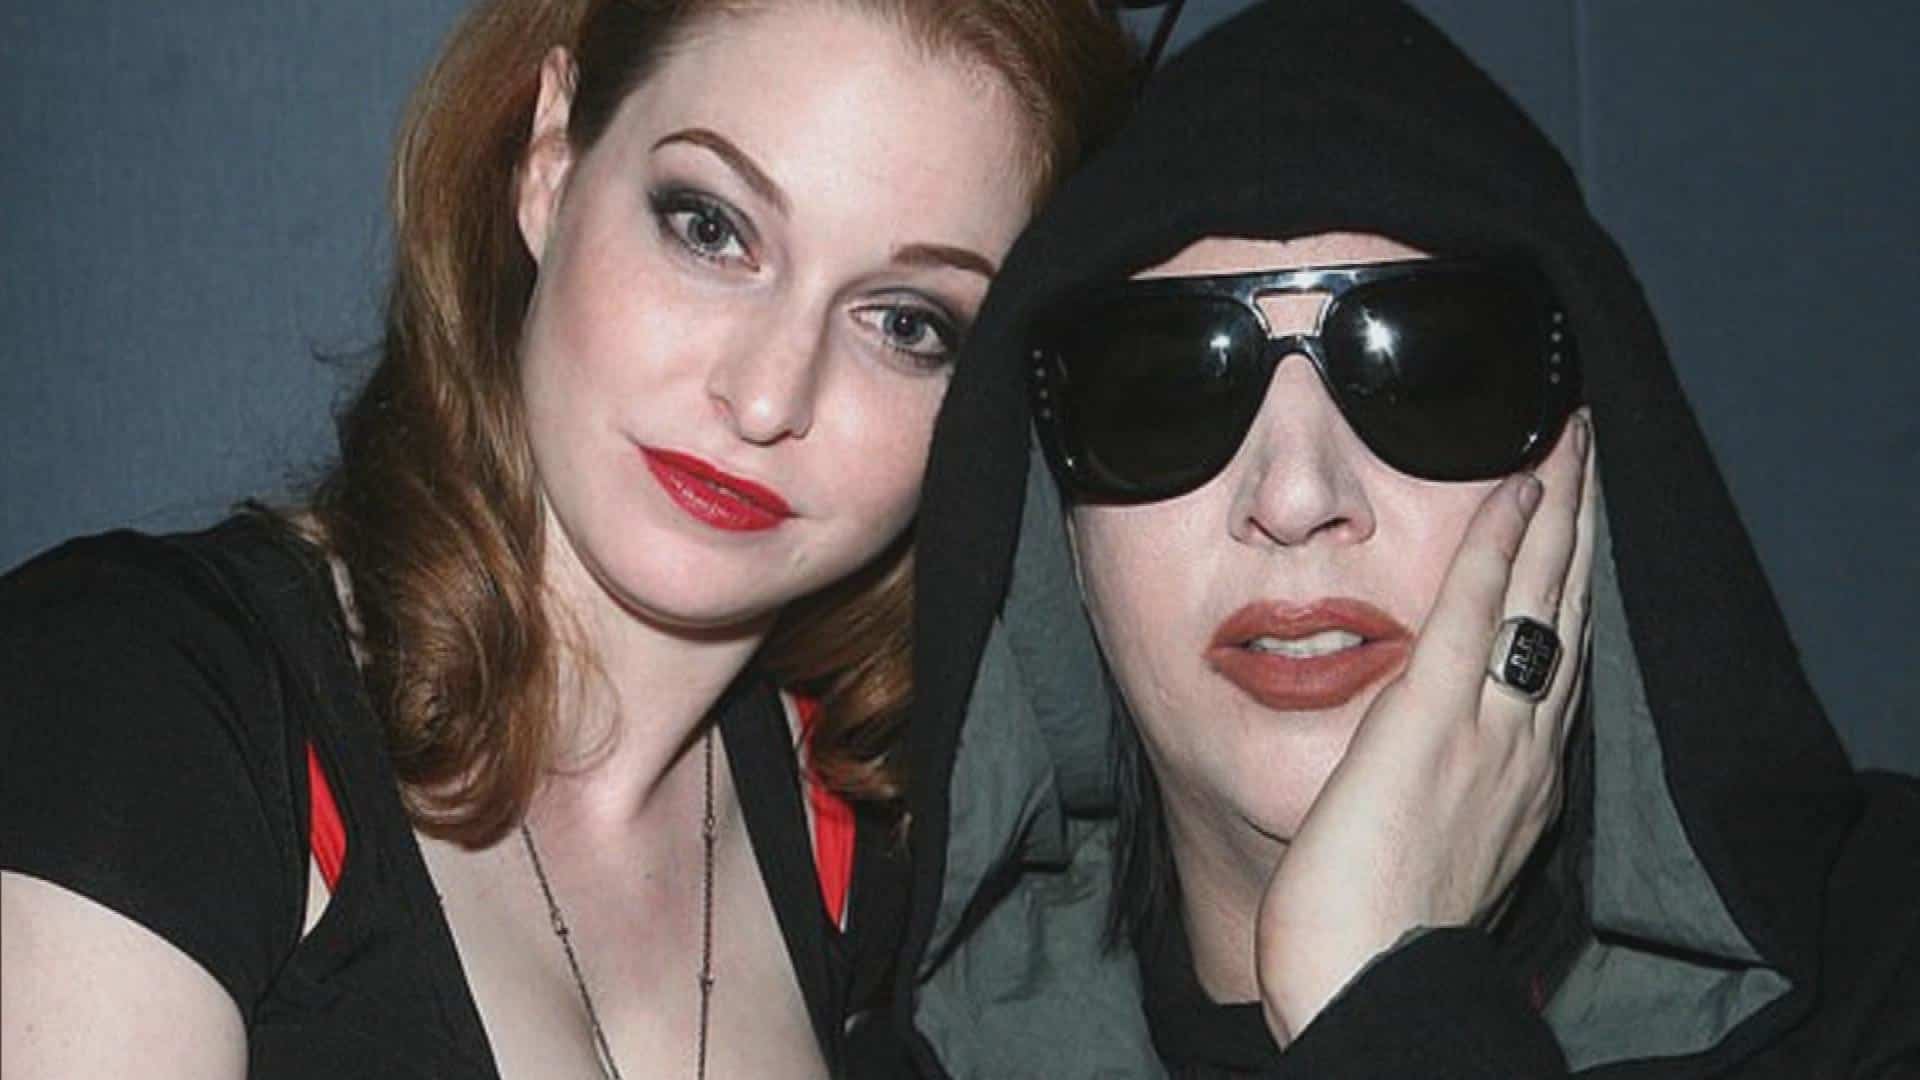 L’attrice Esmé Bianco di Game of Thrones denuncia Marilyn Manson: “Voglio impedirgli di distruggere altre vite”